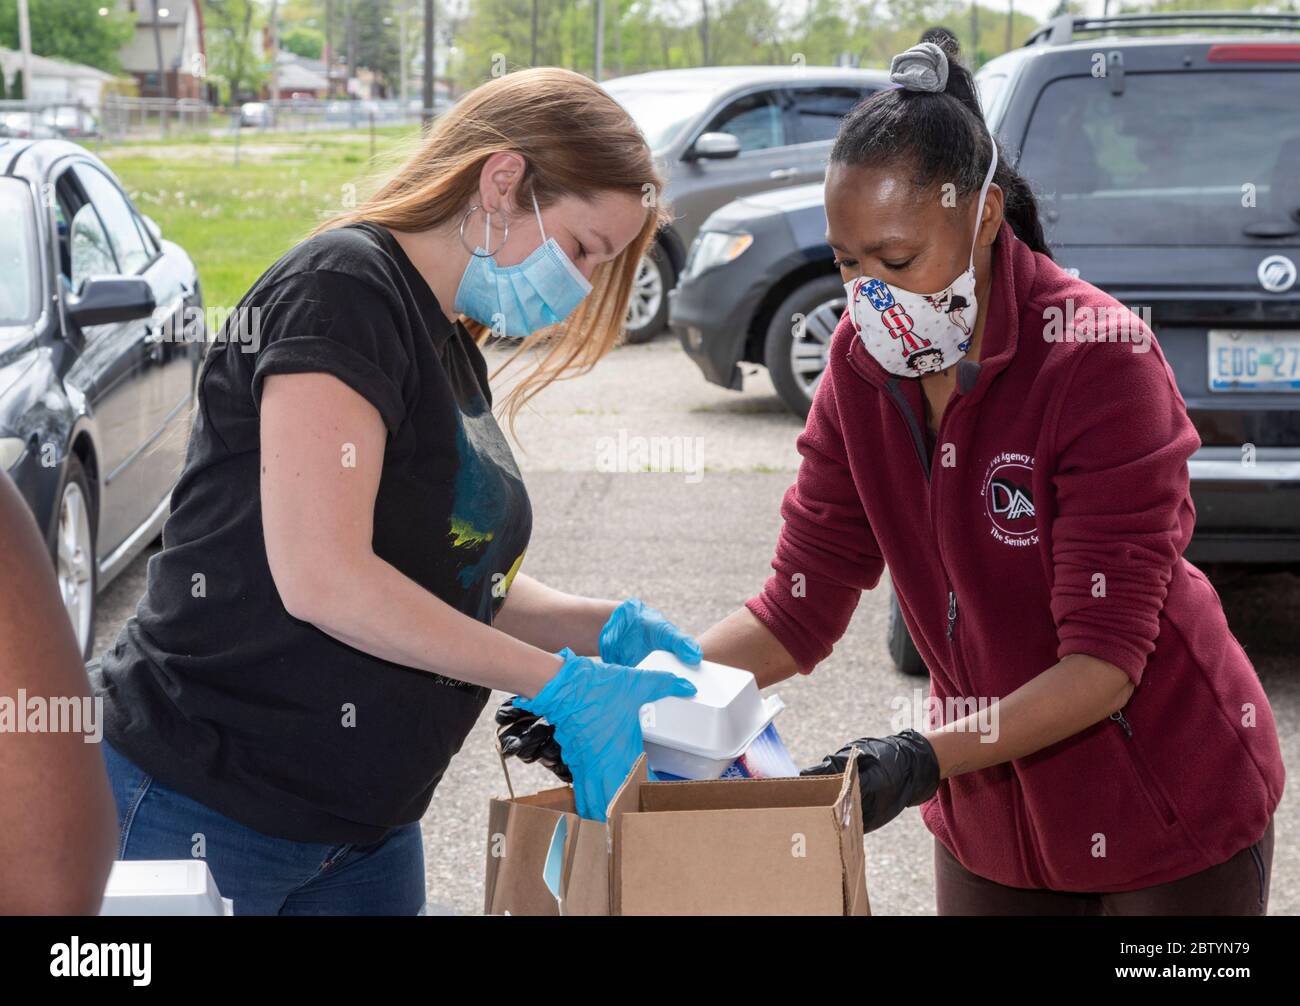 Detroit, Michigan - i volontari confezionano il cibo per la distribuzione gratuita in un quartiere a basso reddito durante la pandemia del coronavirus. La distribuzione era di o Foto Stock